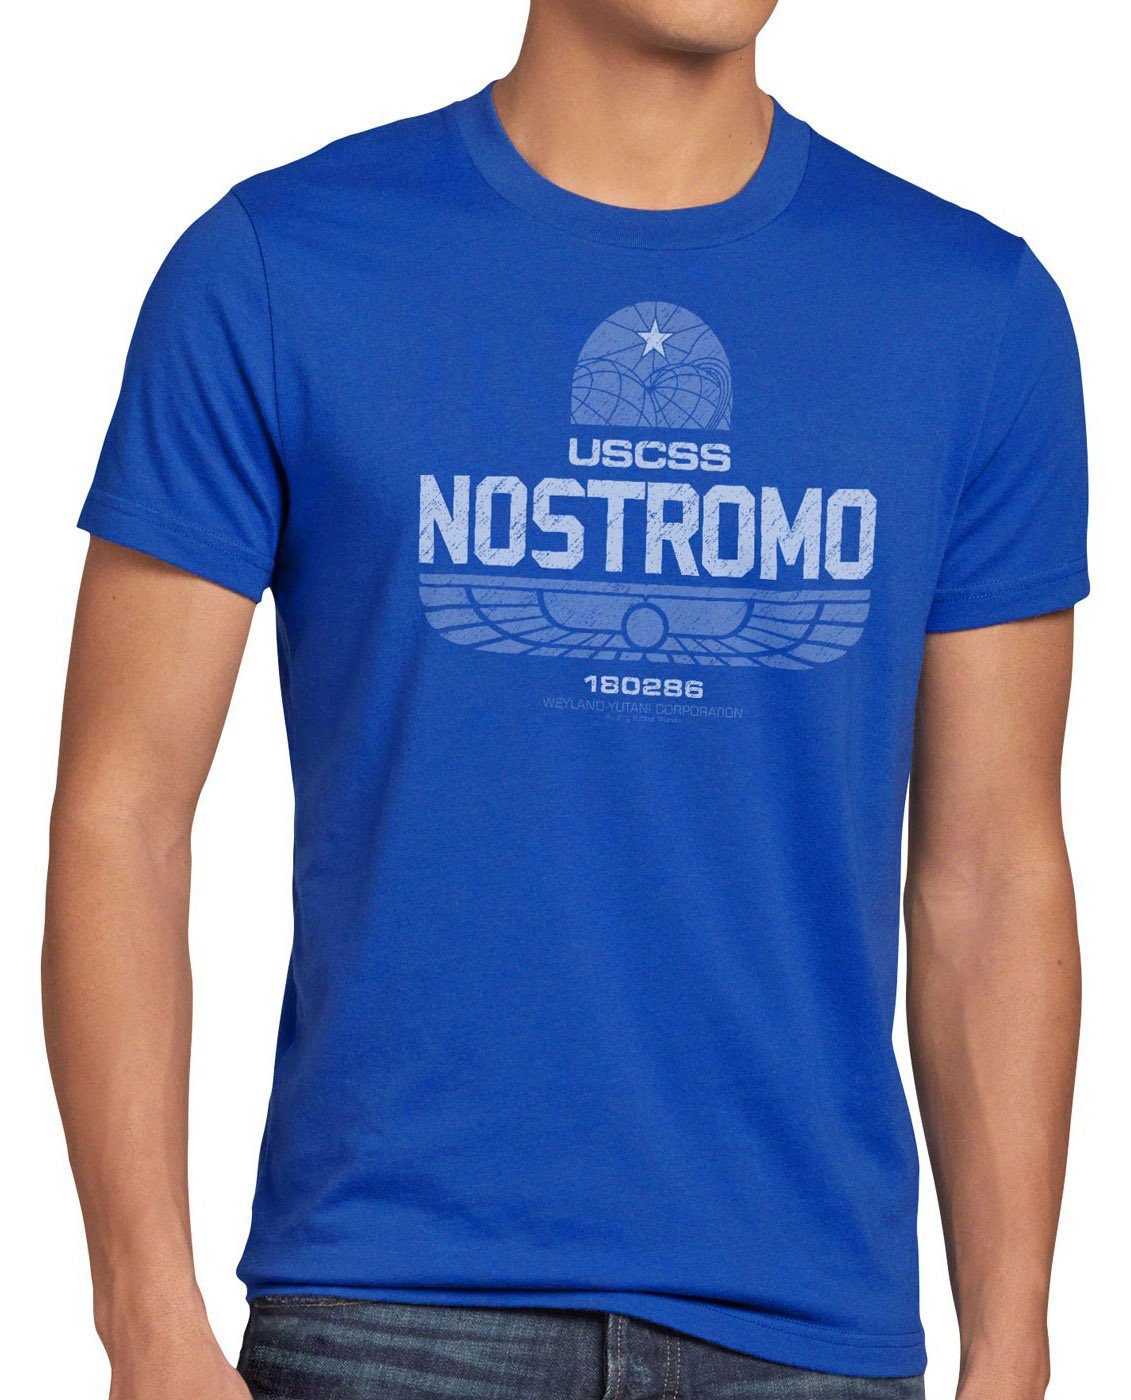 T-Shirt Nostromo alien style3 predator 180286 xenomorph box Print-Shirt blau USCSS film vs Herren kino